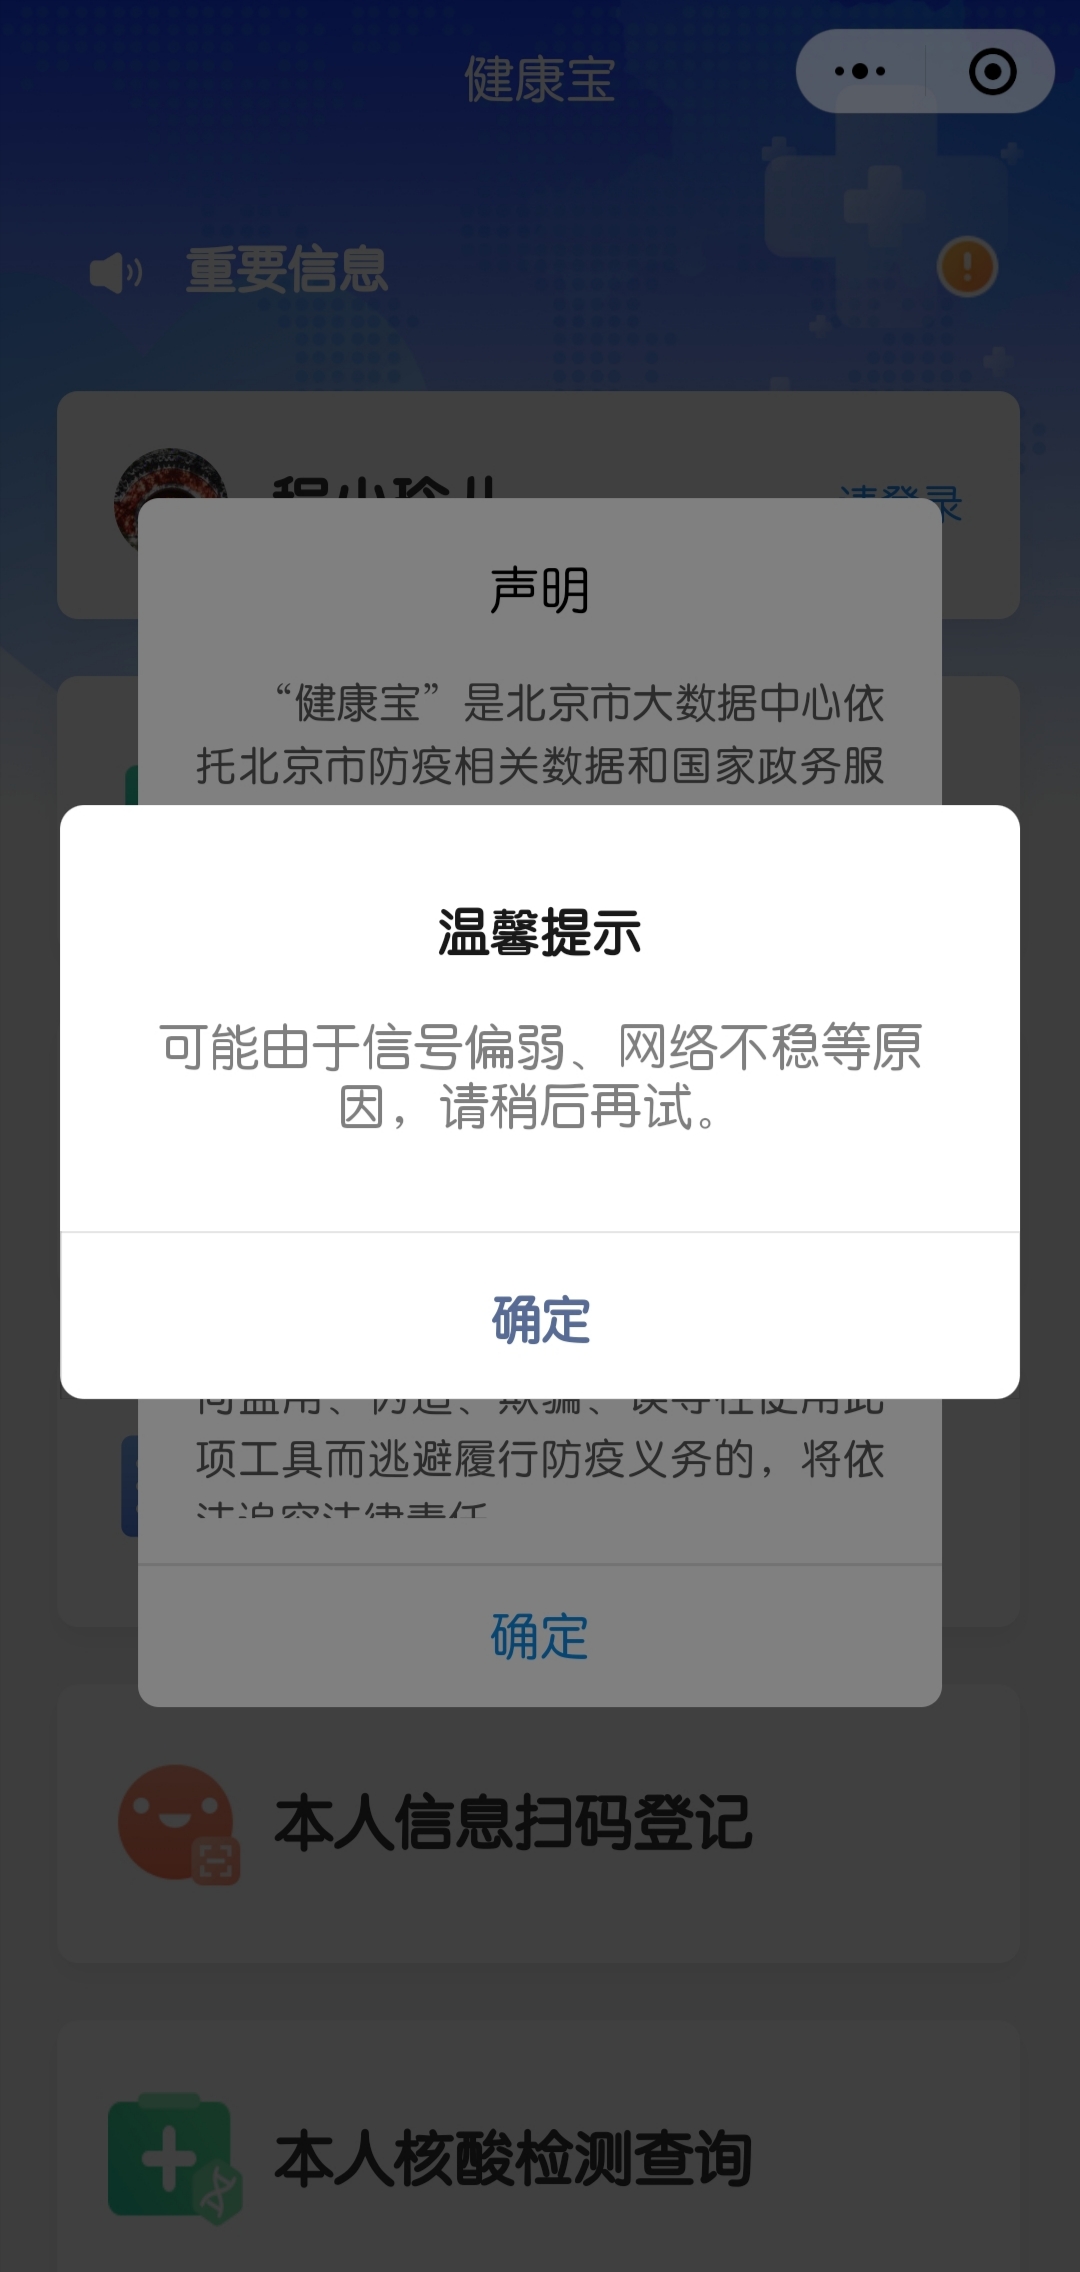 “北京健康宝”微信小程序已恢复正常使用